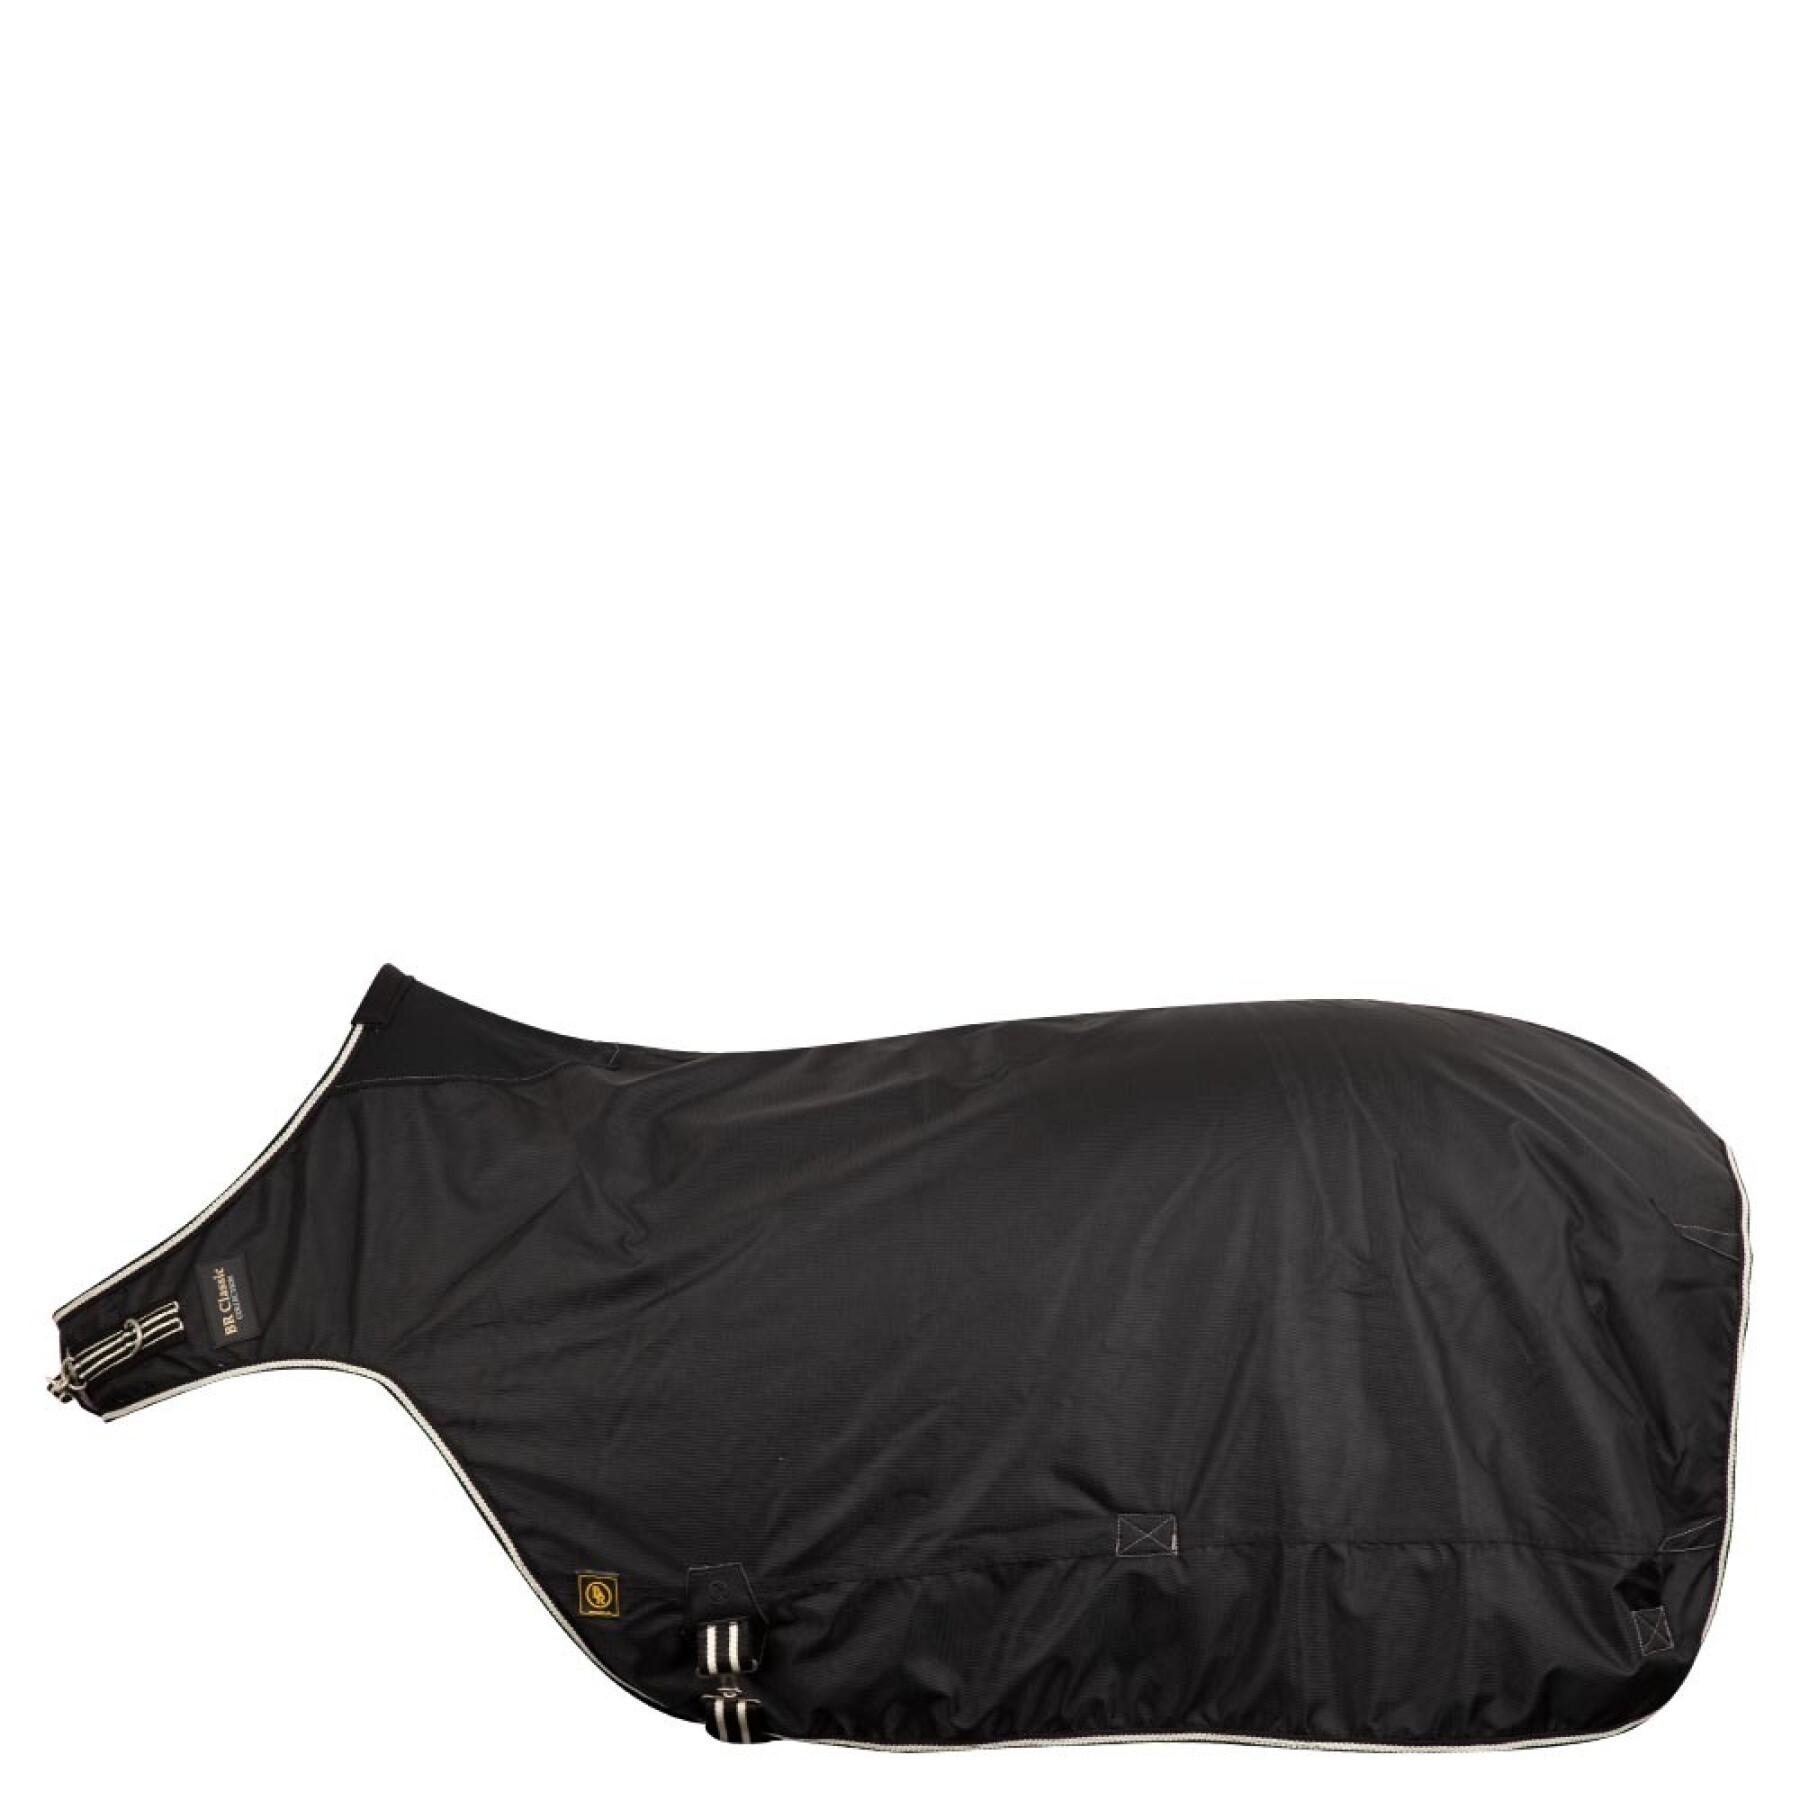 Cobertor impermeável para passeadores de cavalos BR Equitation Classic 1200D 150g